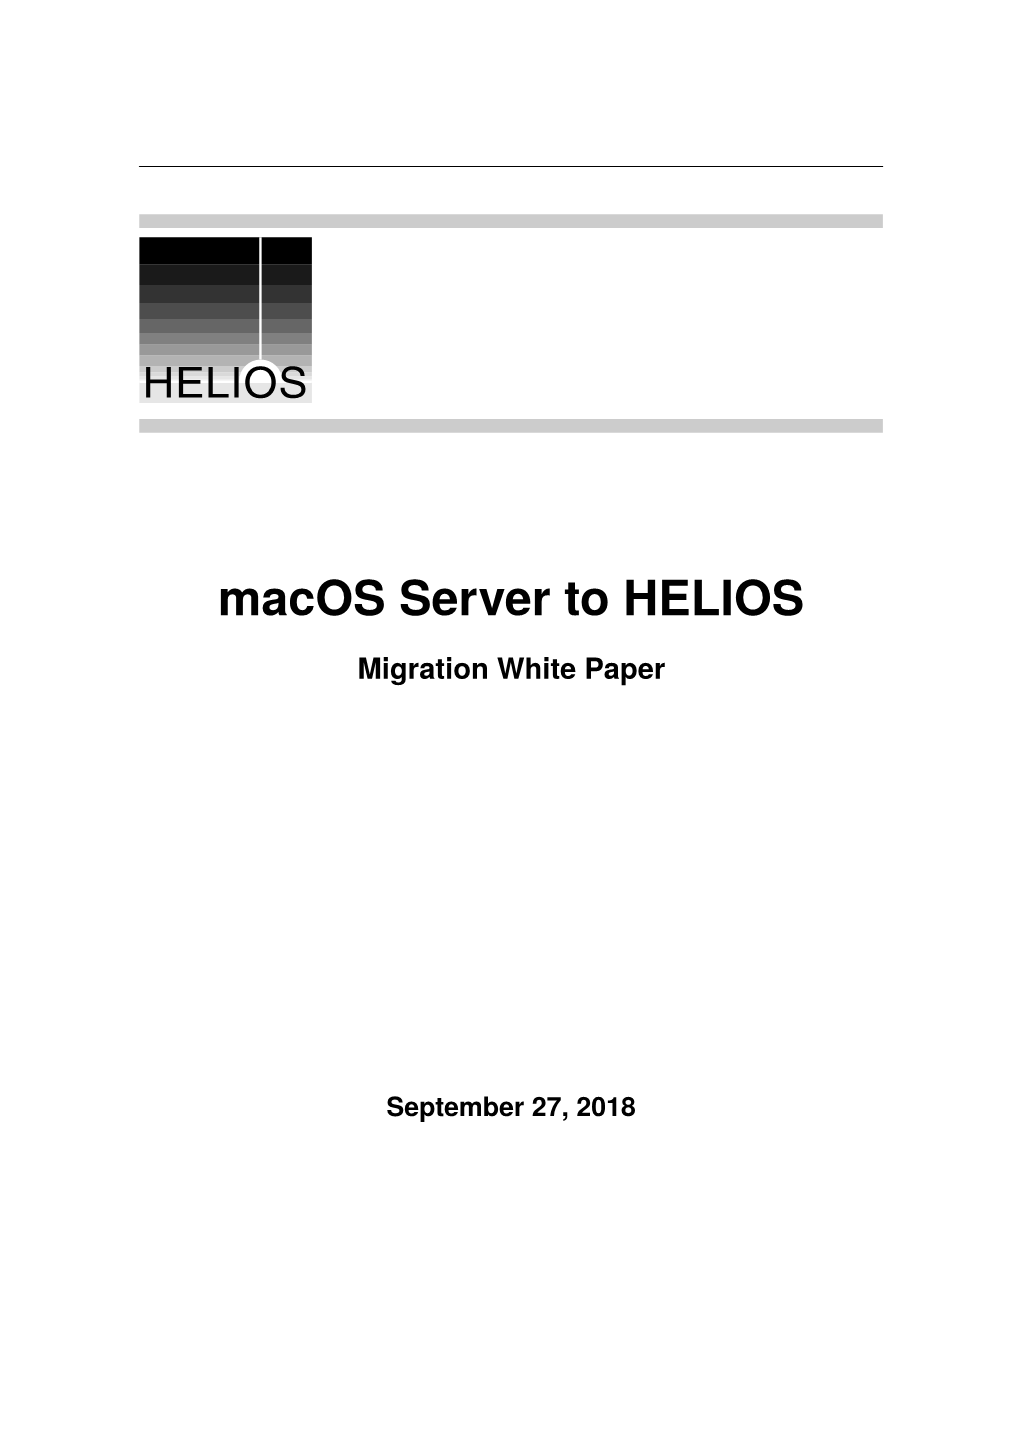 Macos Server Migration to a HELIOS Server – White Paper